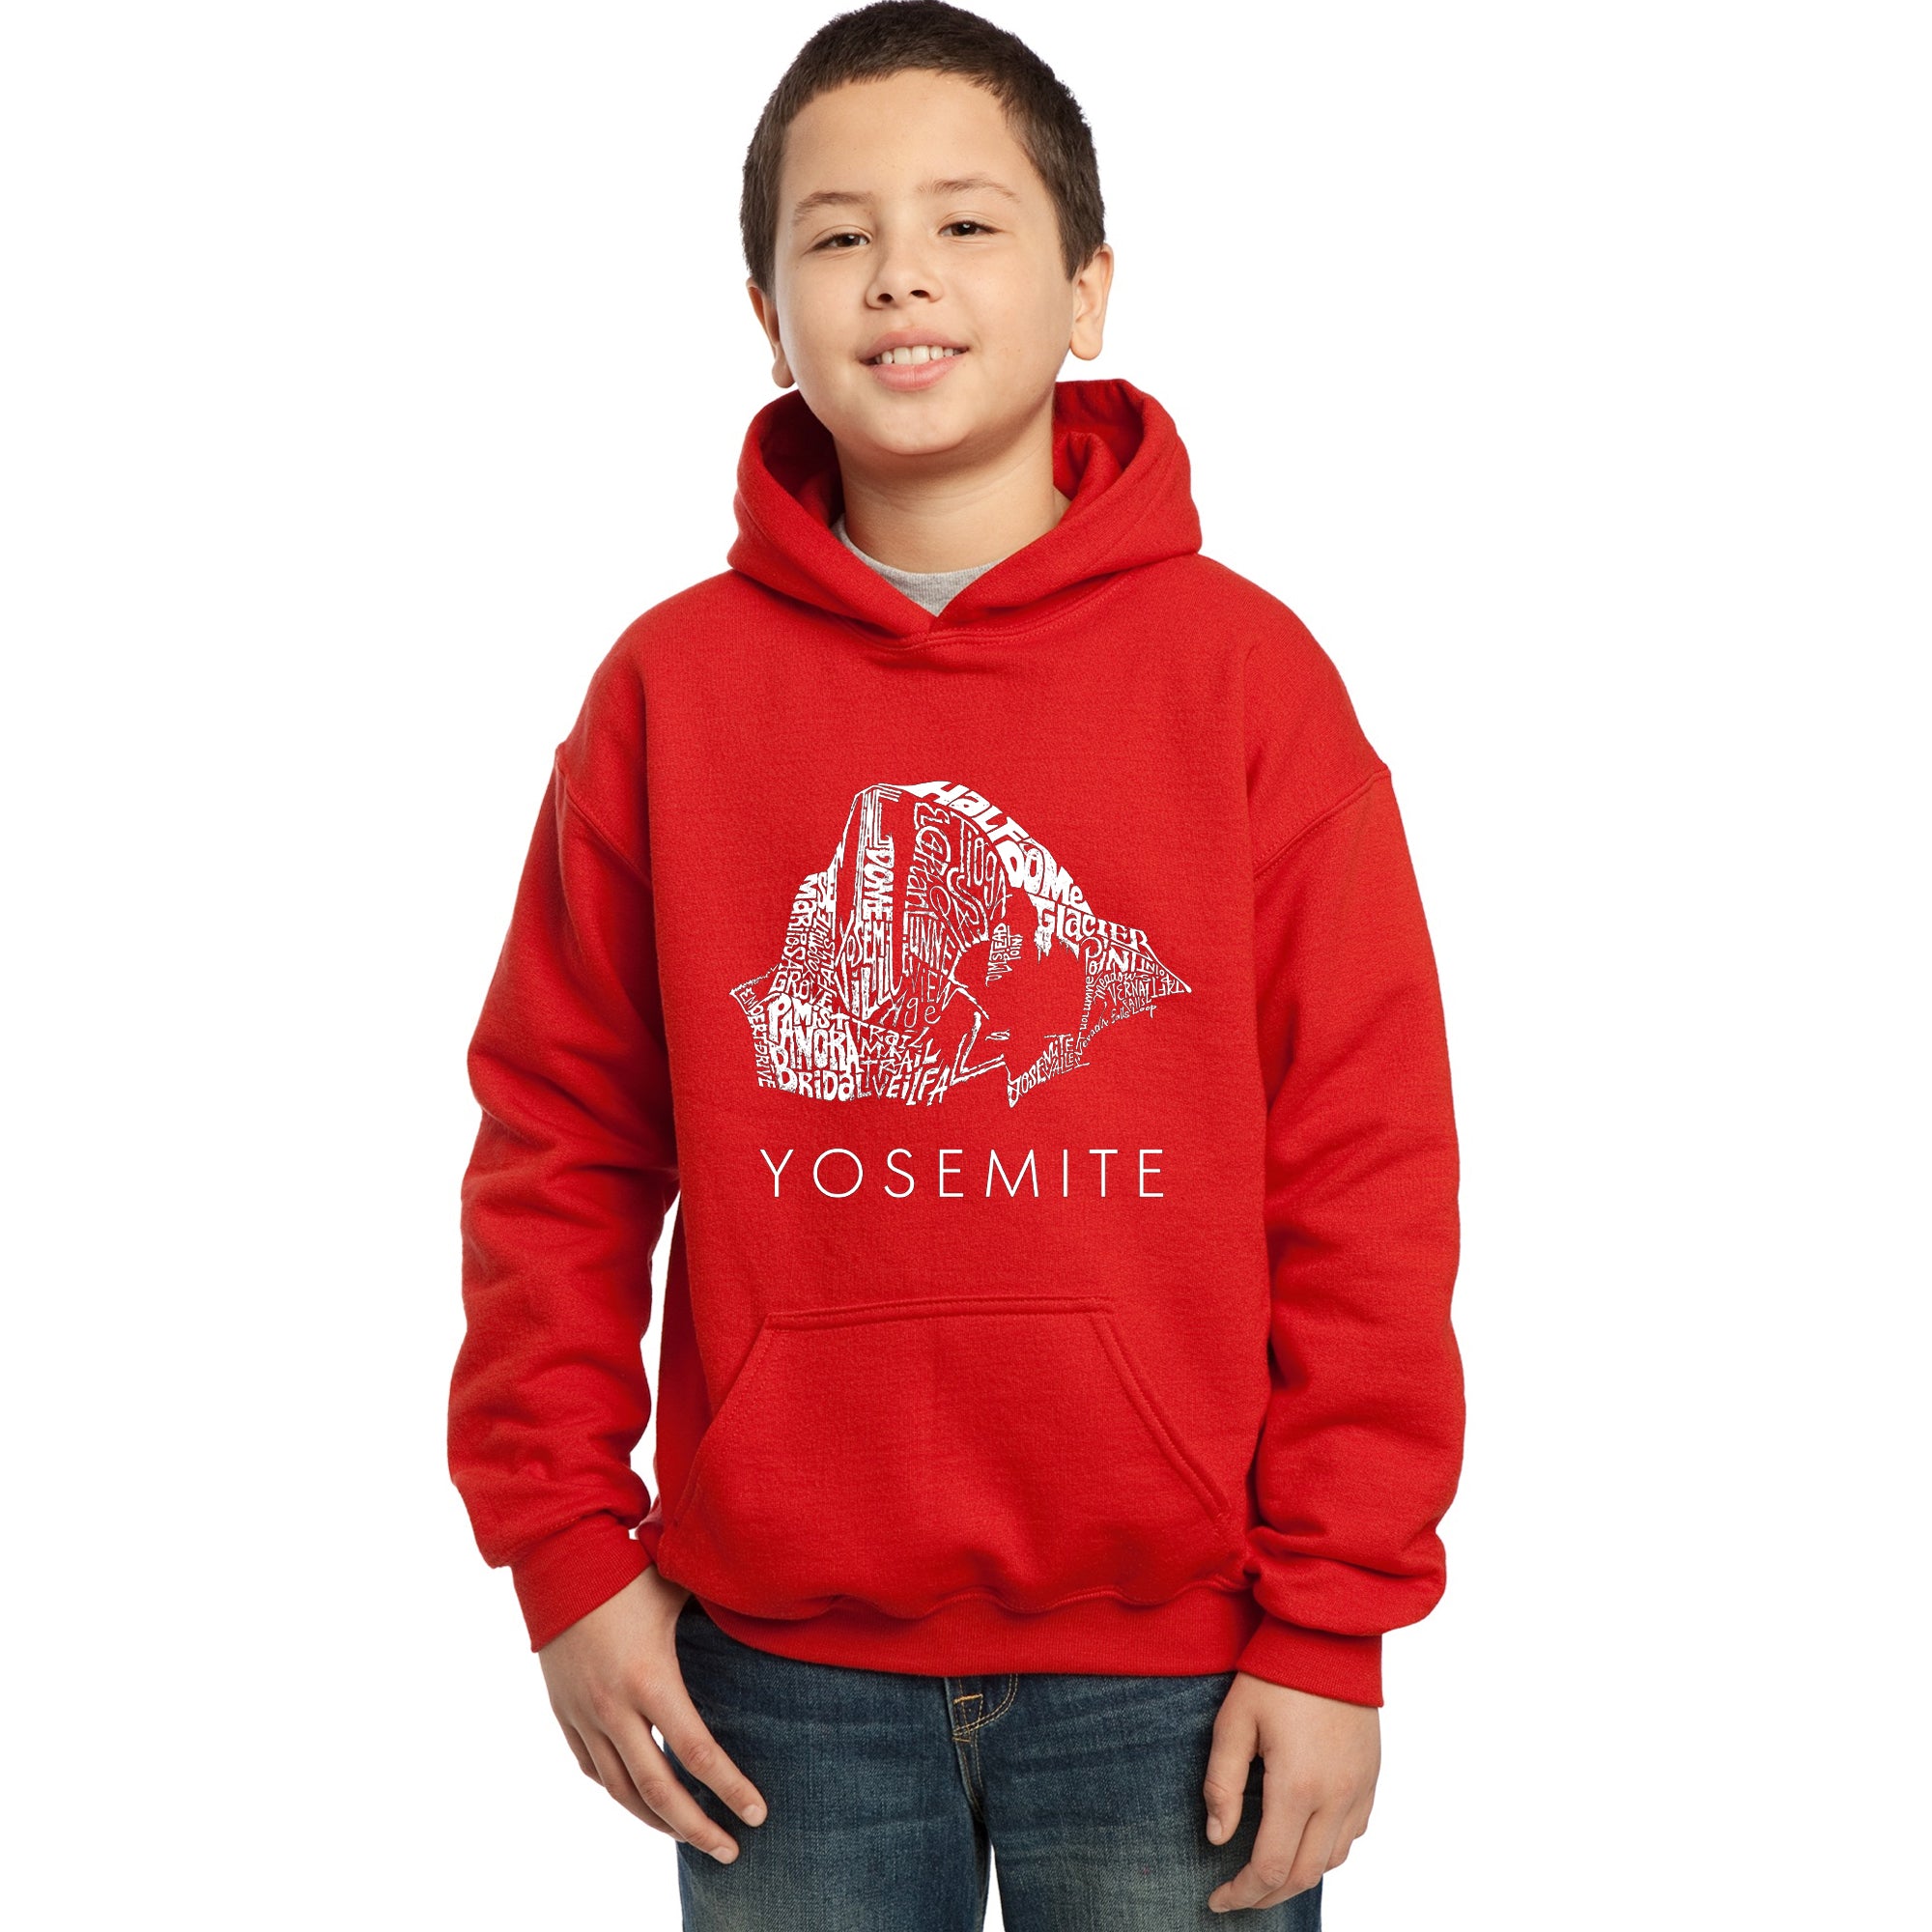 Yosemite - Boy's Word Art Hooded Sweatshirt – LA Pop Art